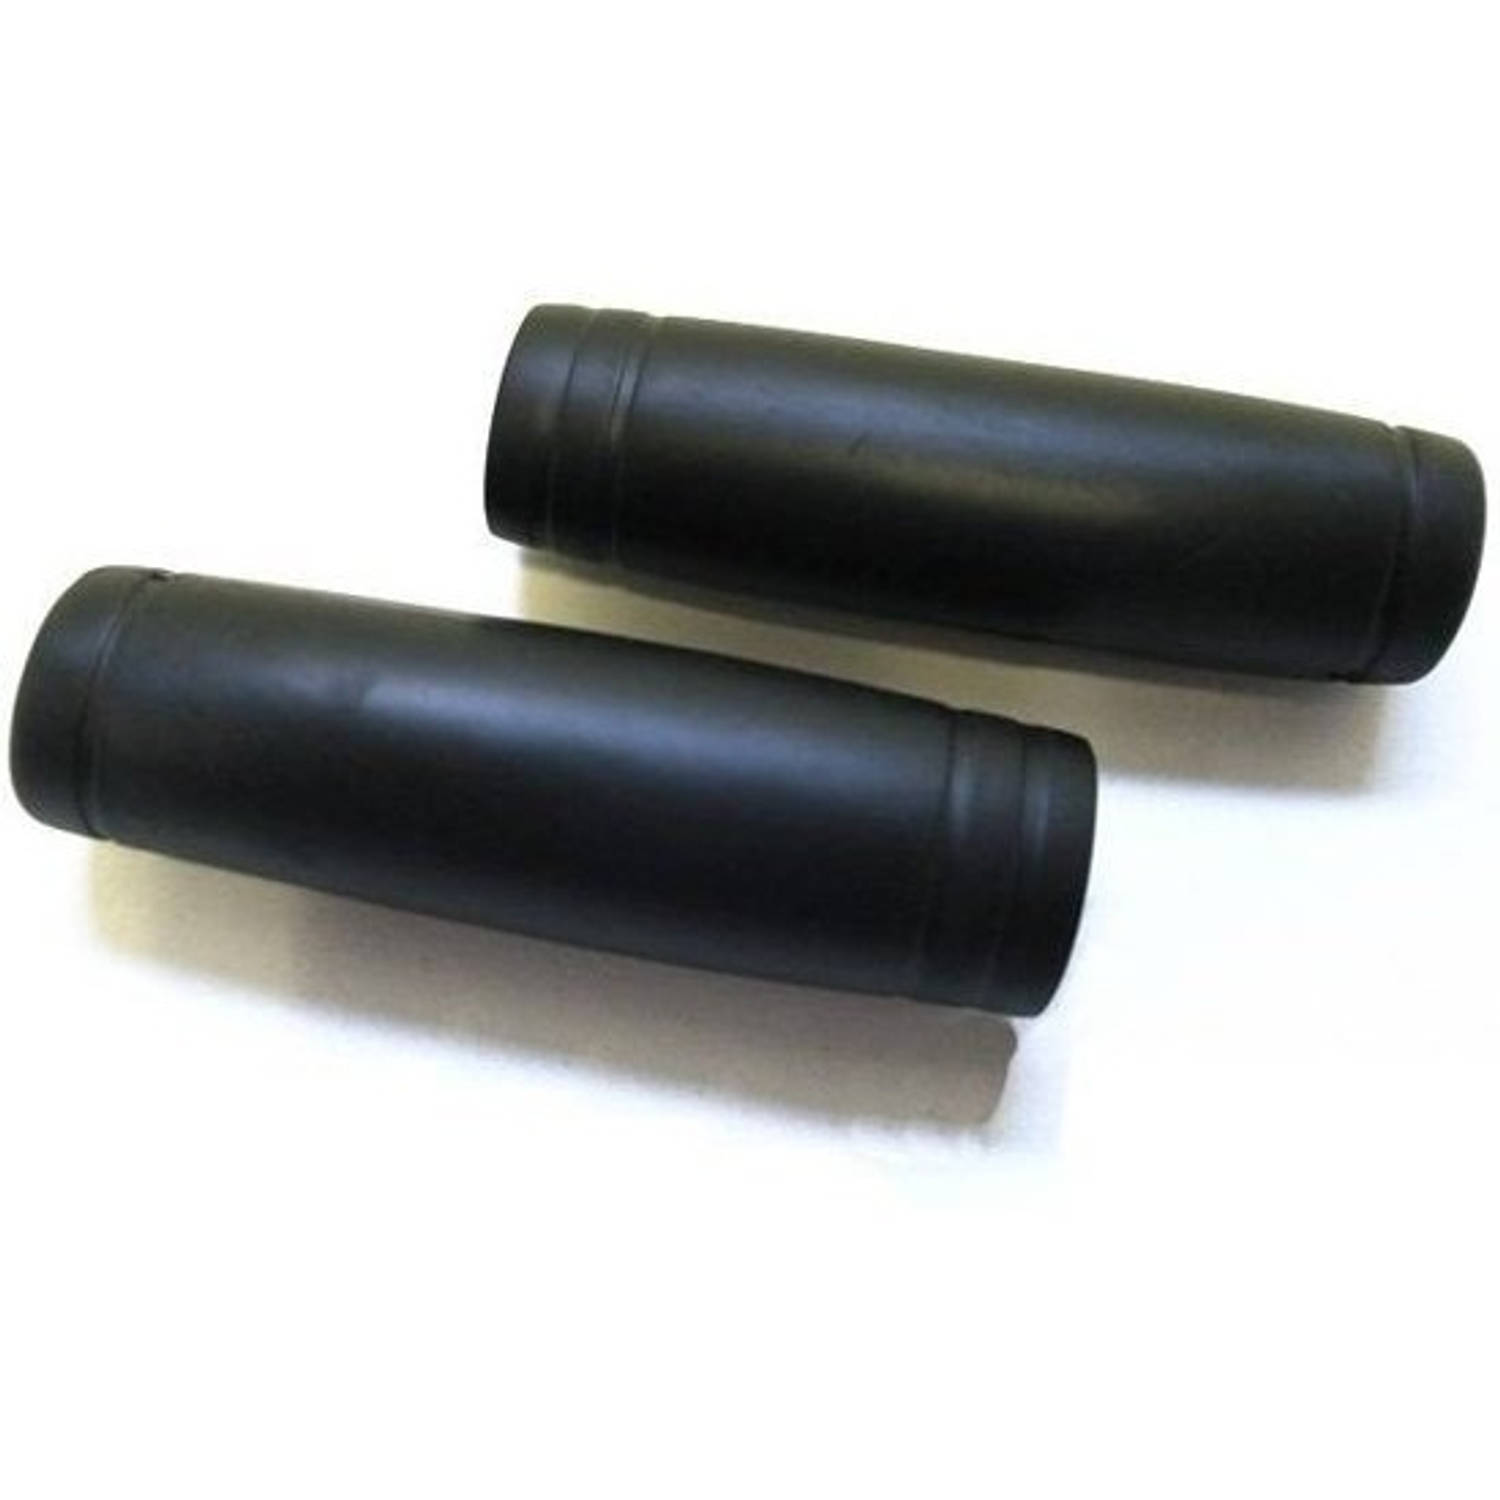 Fiets handvatten set rubber zwart 22 x 110 mm - Fietshandvatten Blokker